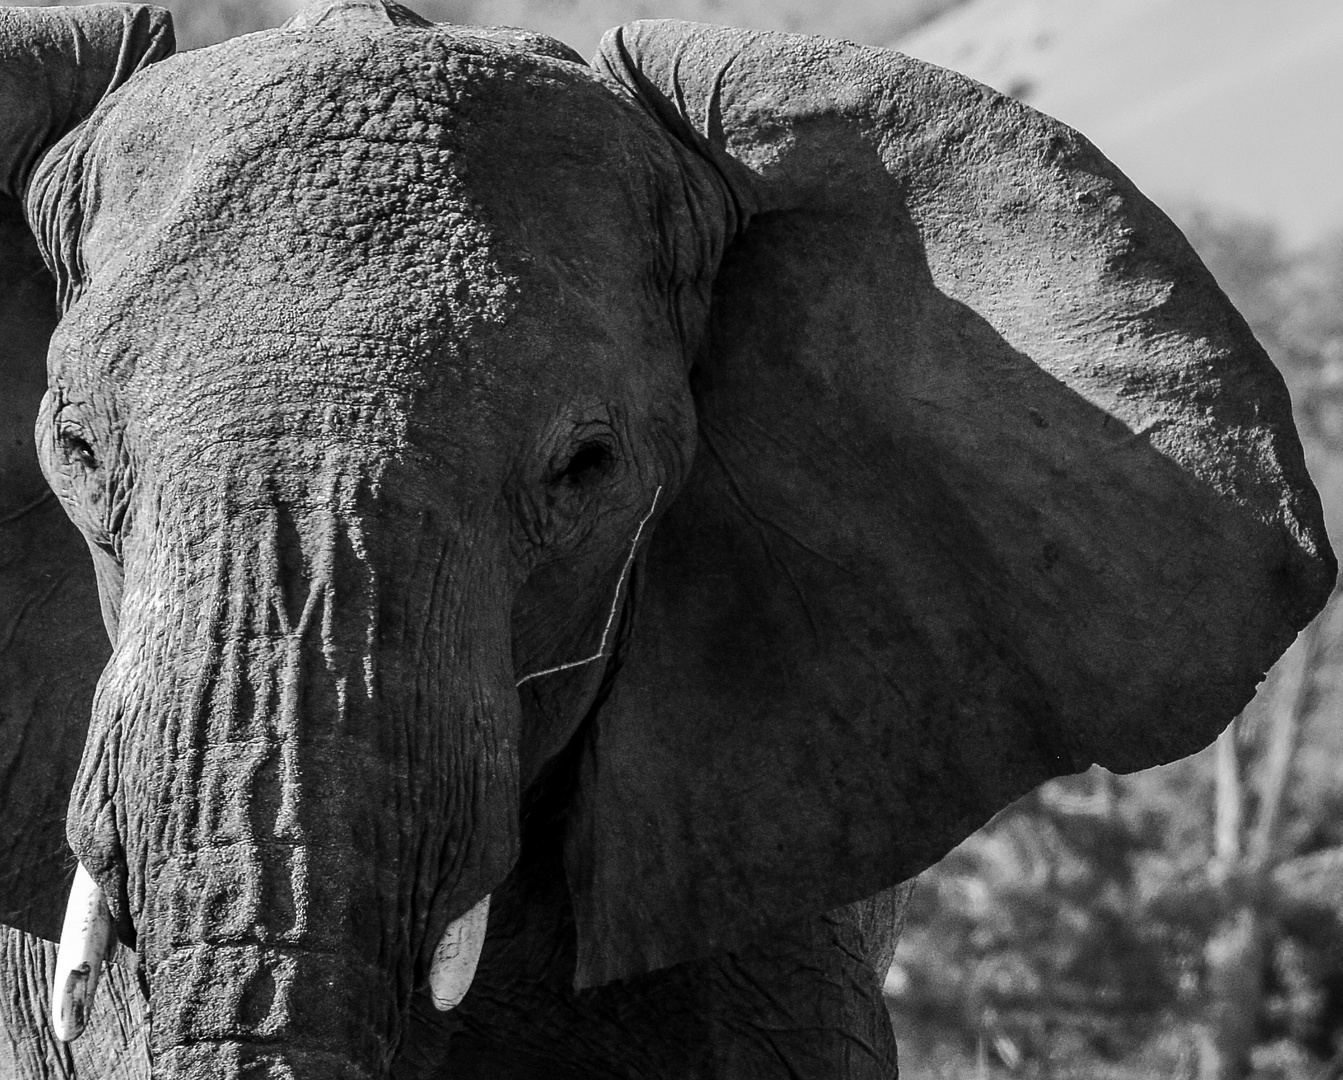 Namibia - Wüstenelefant